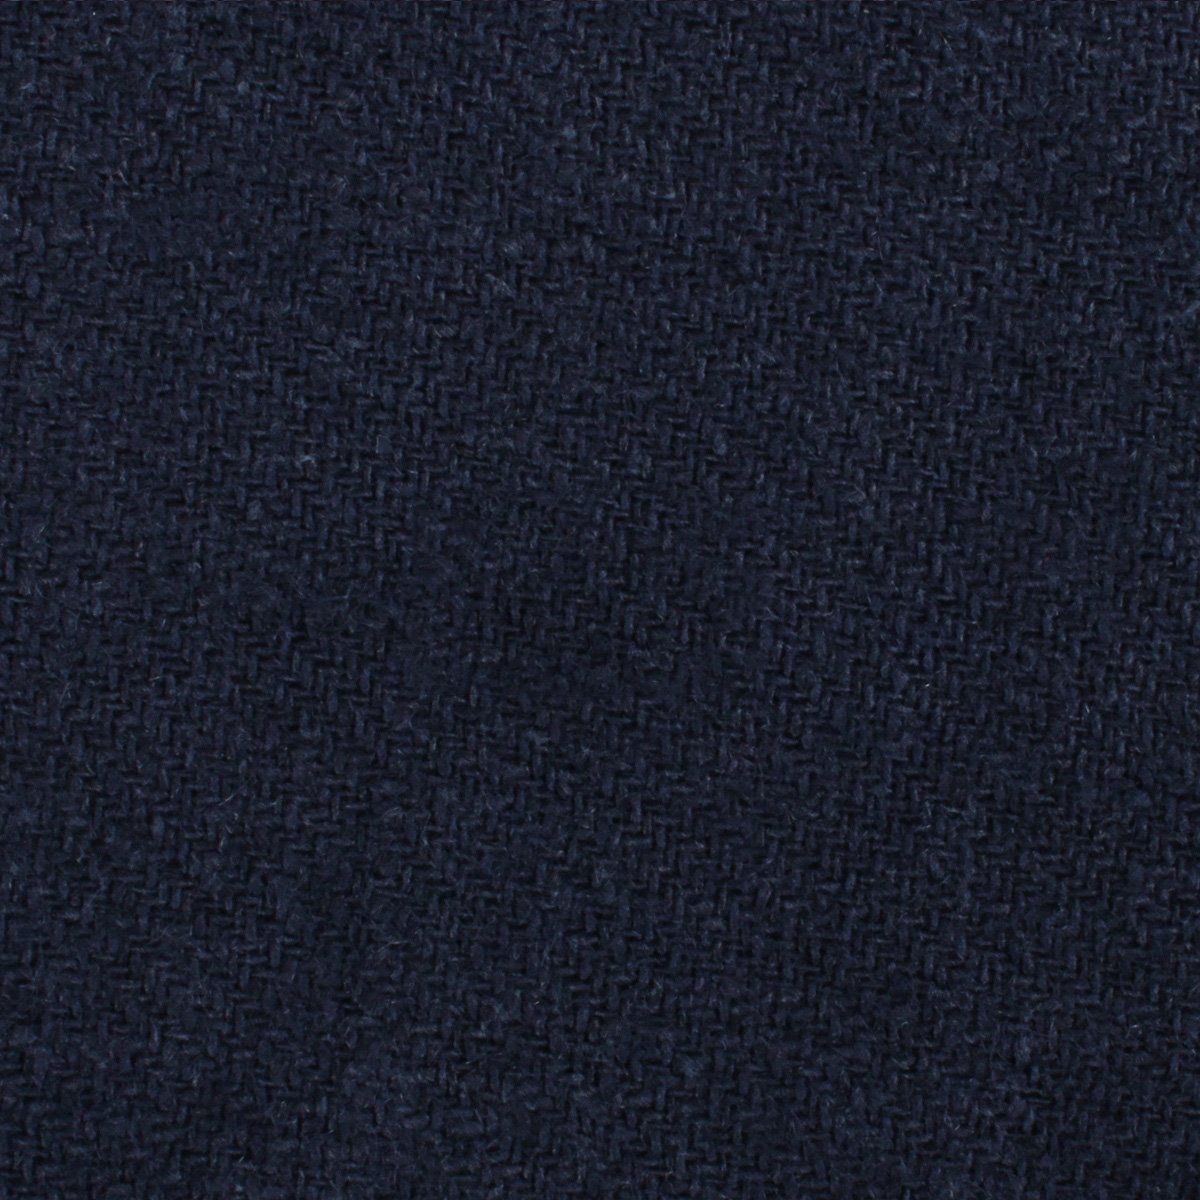 Midnight Blue-Black Linen Necktie Fabric